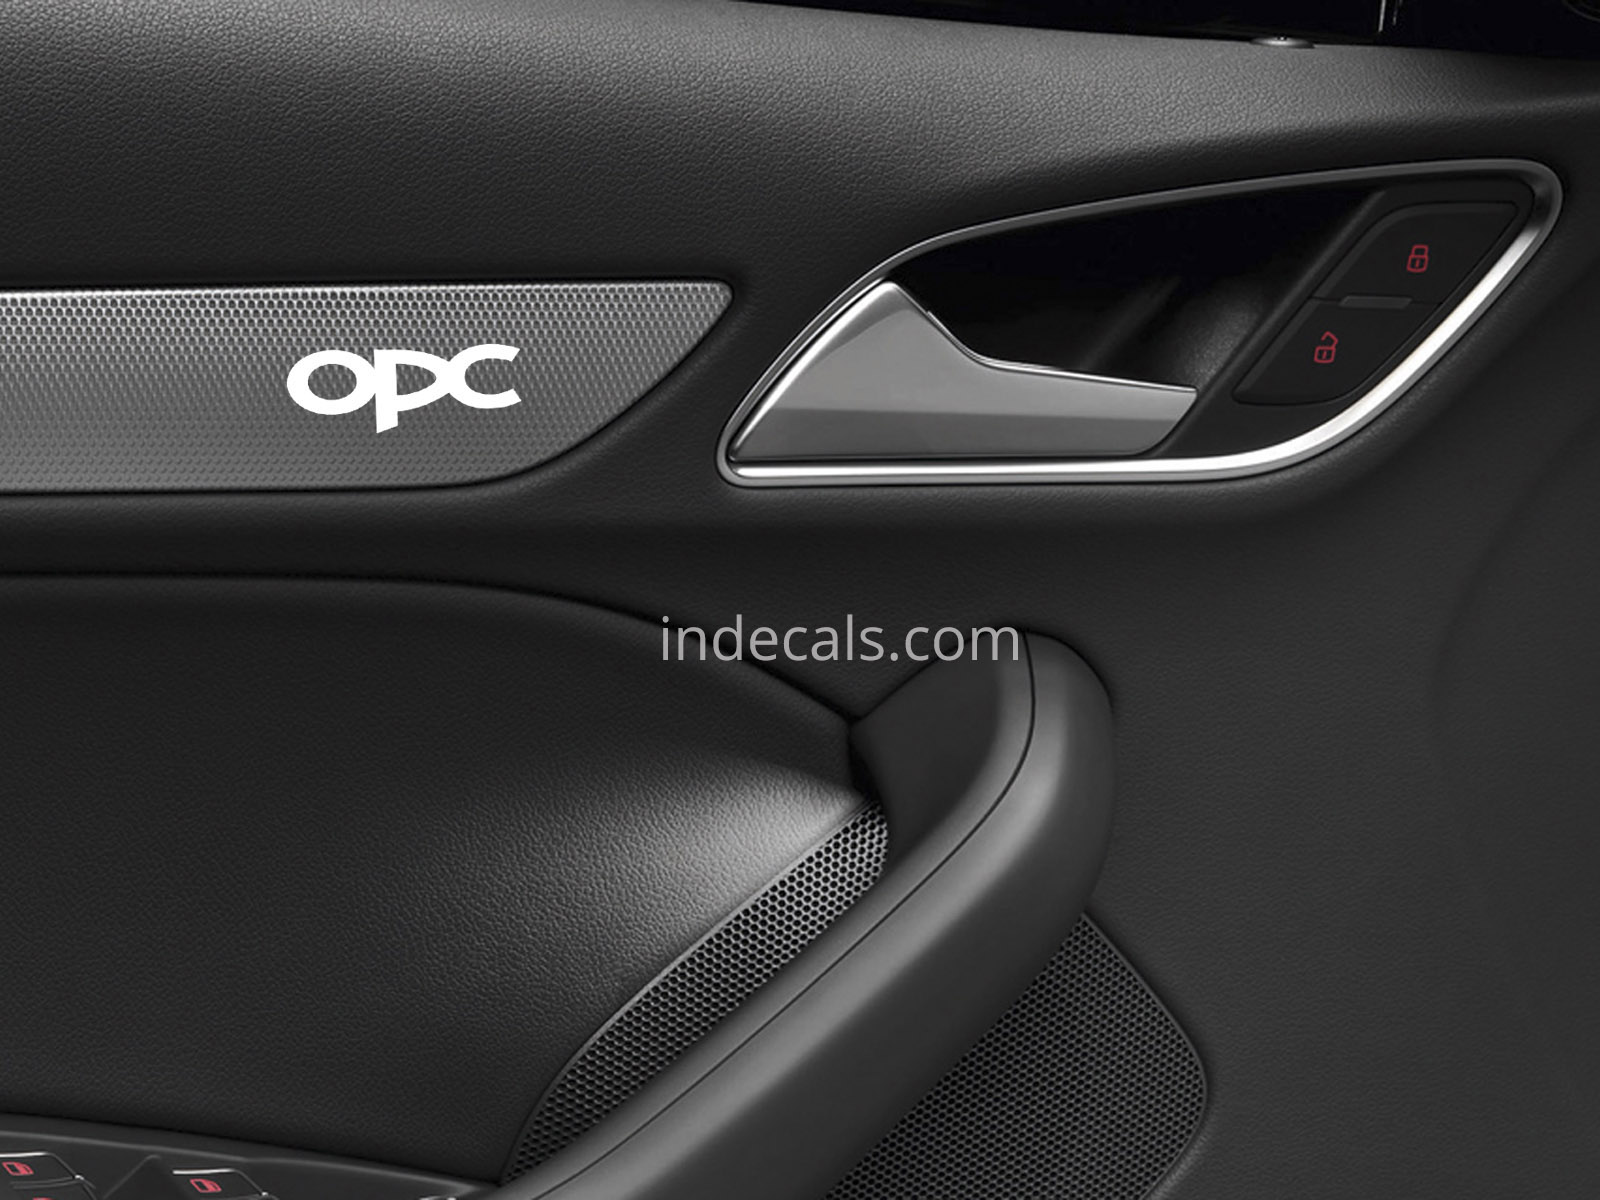 6 x Opel OPC Stickers for Door Trim - White